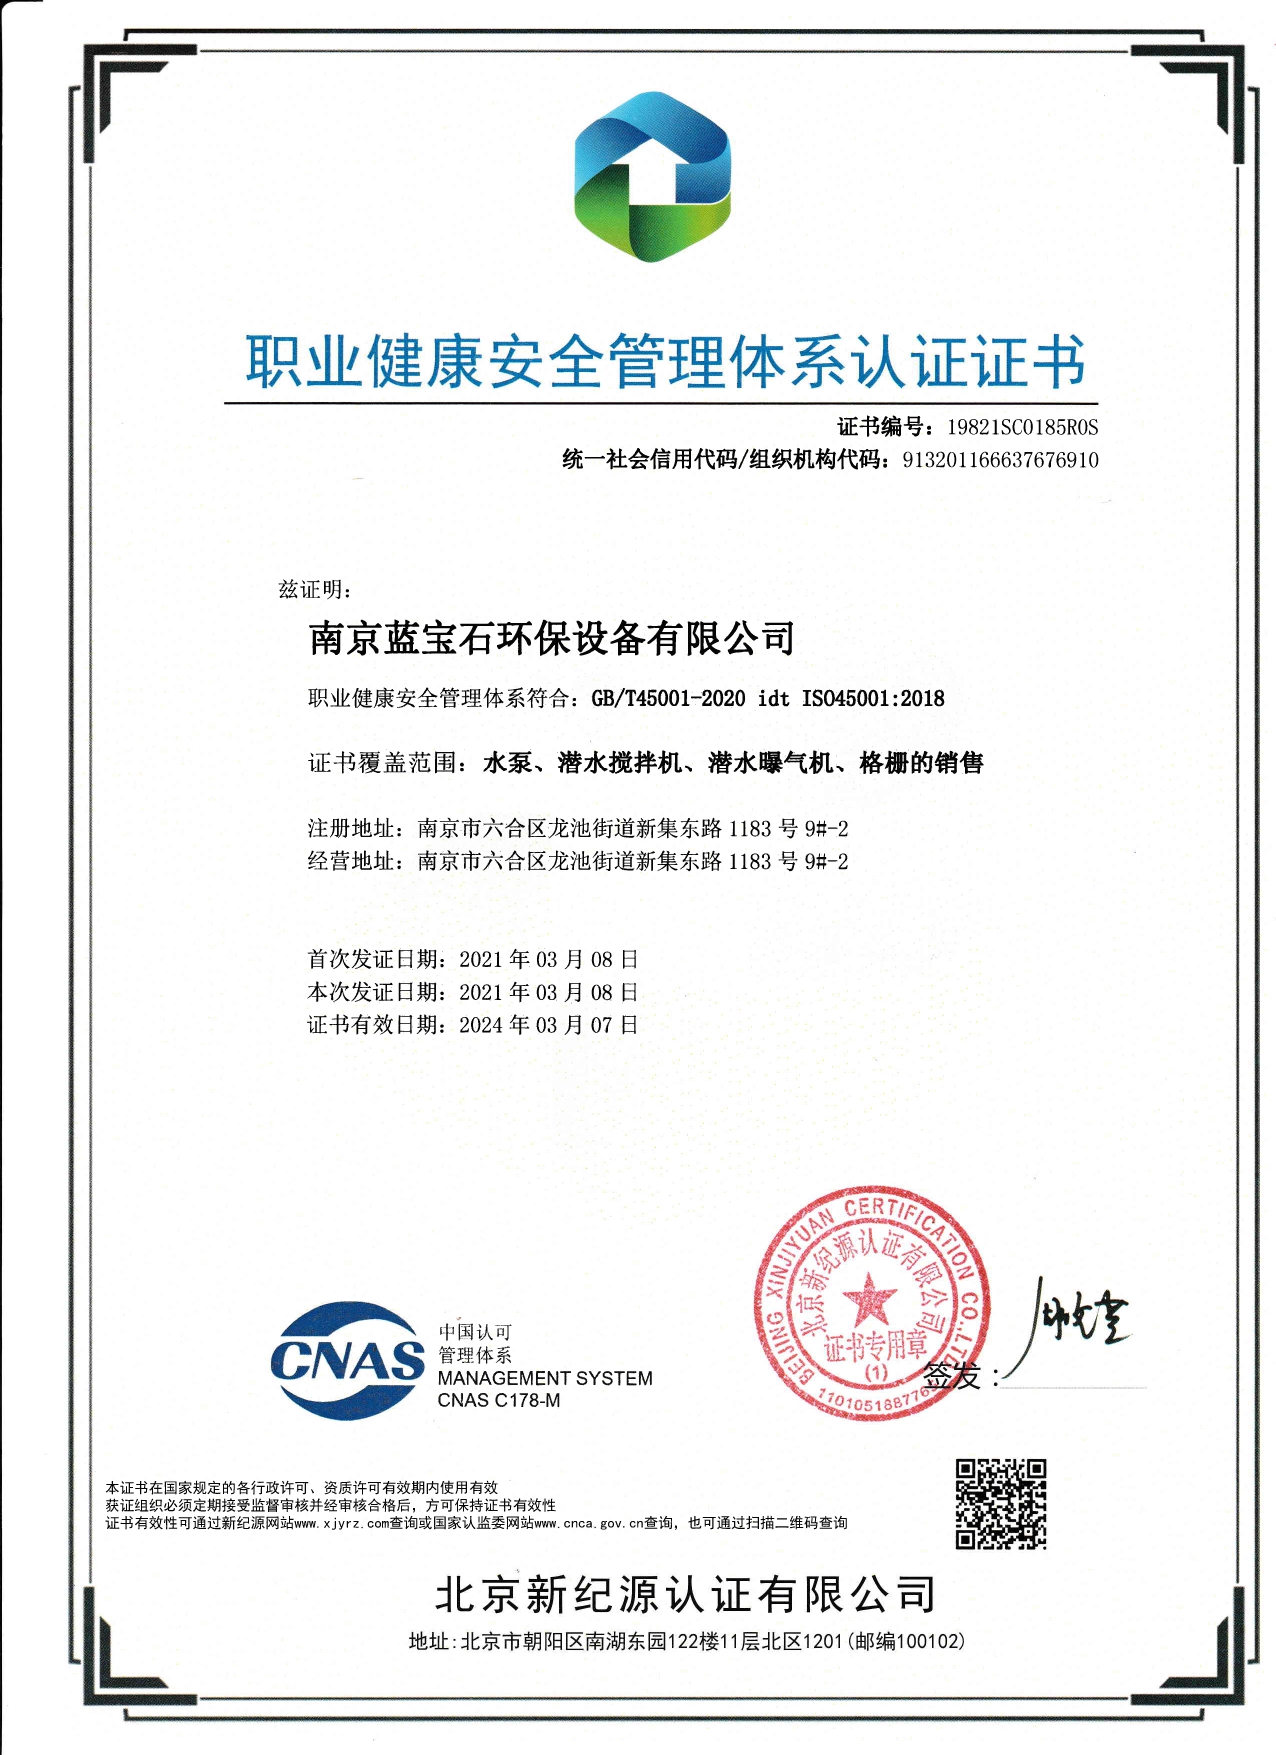 南京藍寶石環保設備有限公司通過職業健康安全管理體系認證